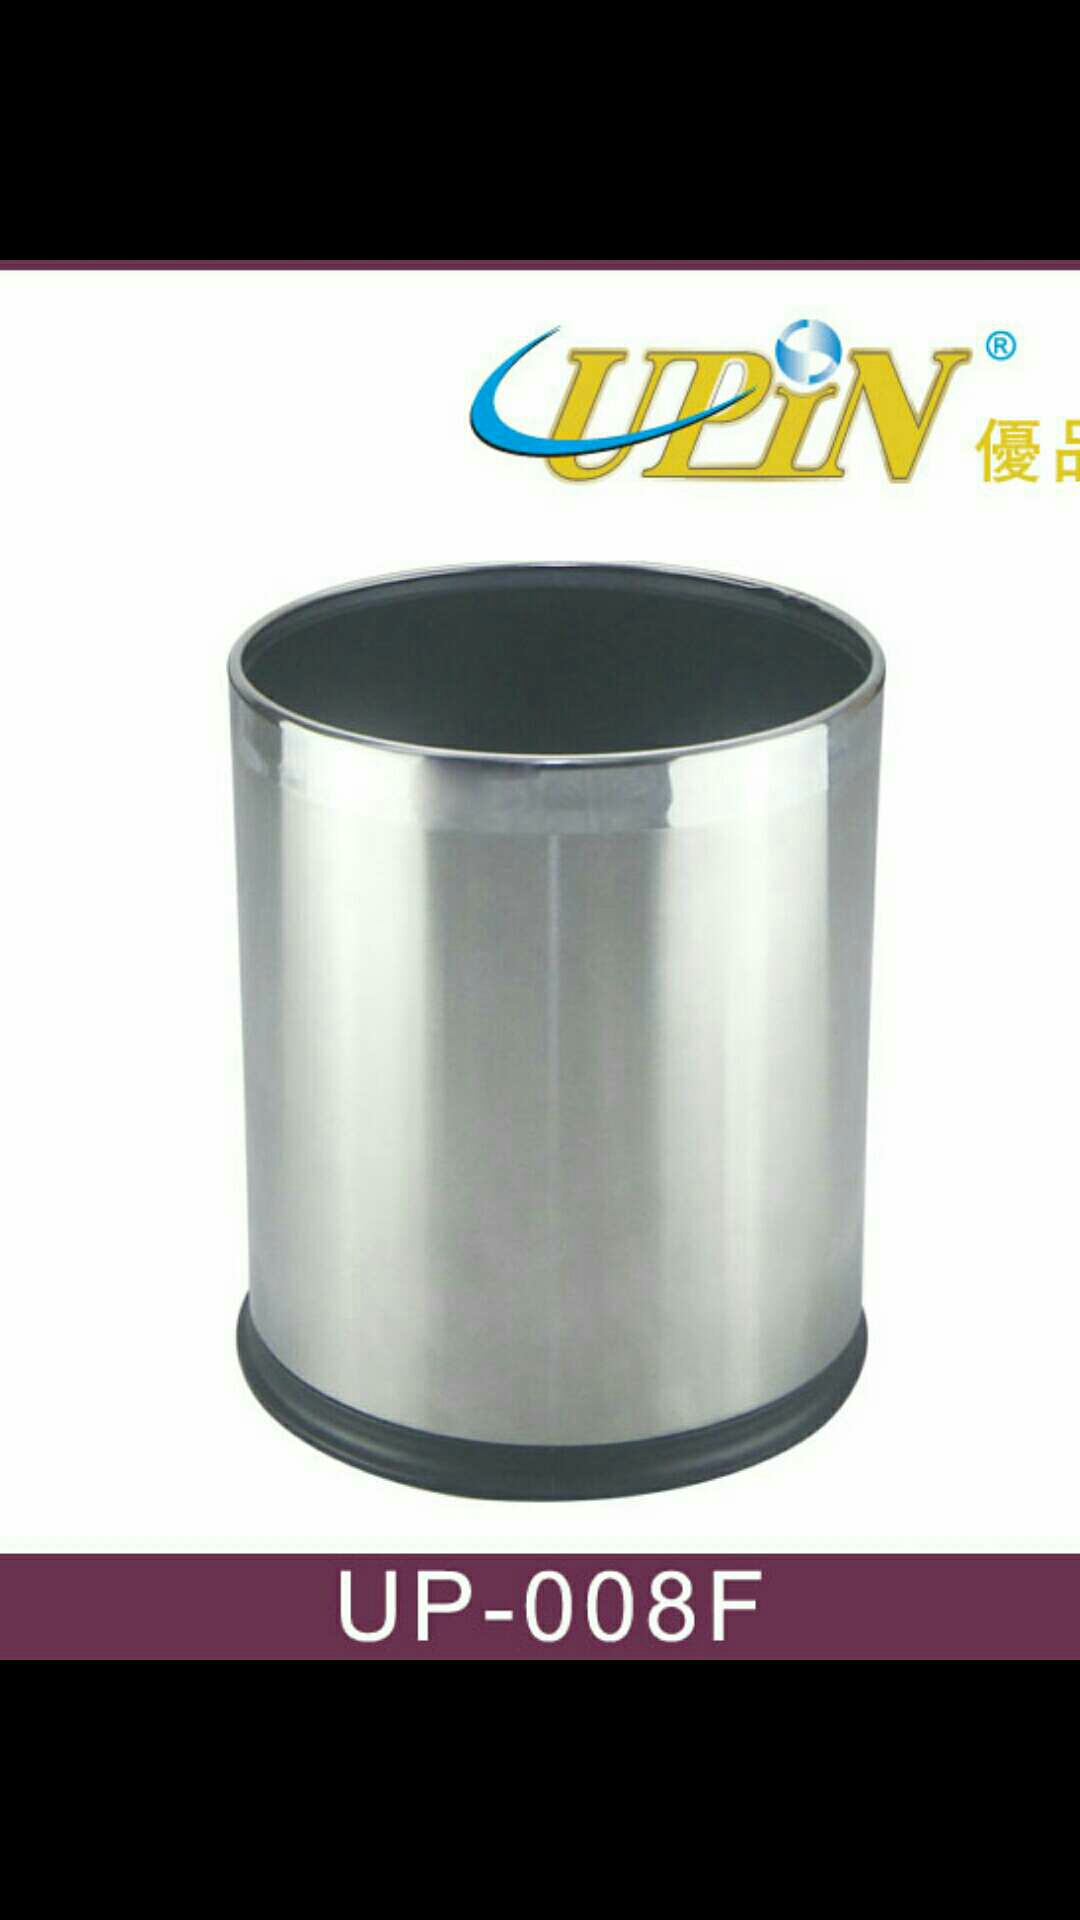 Jyh-不锈钢双层垃圾桶